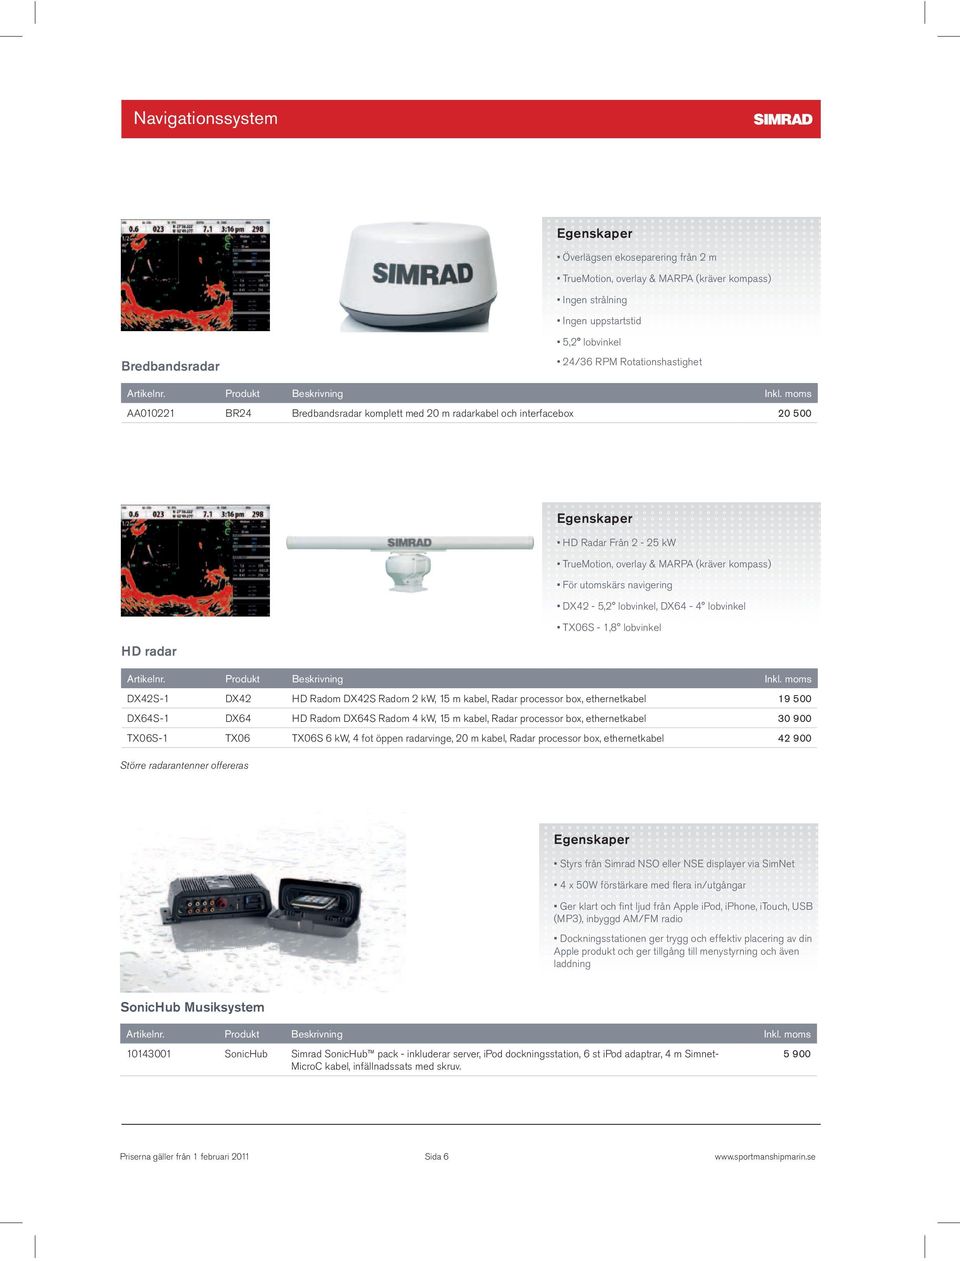 Radar processor box, ethernetkabel 42 900 Större radarantenner offereras Apple produkt och ger tillgång till menystyrning och även laddning SonicHub Musiksystem 10143001 SonicHub Simrad